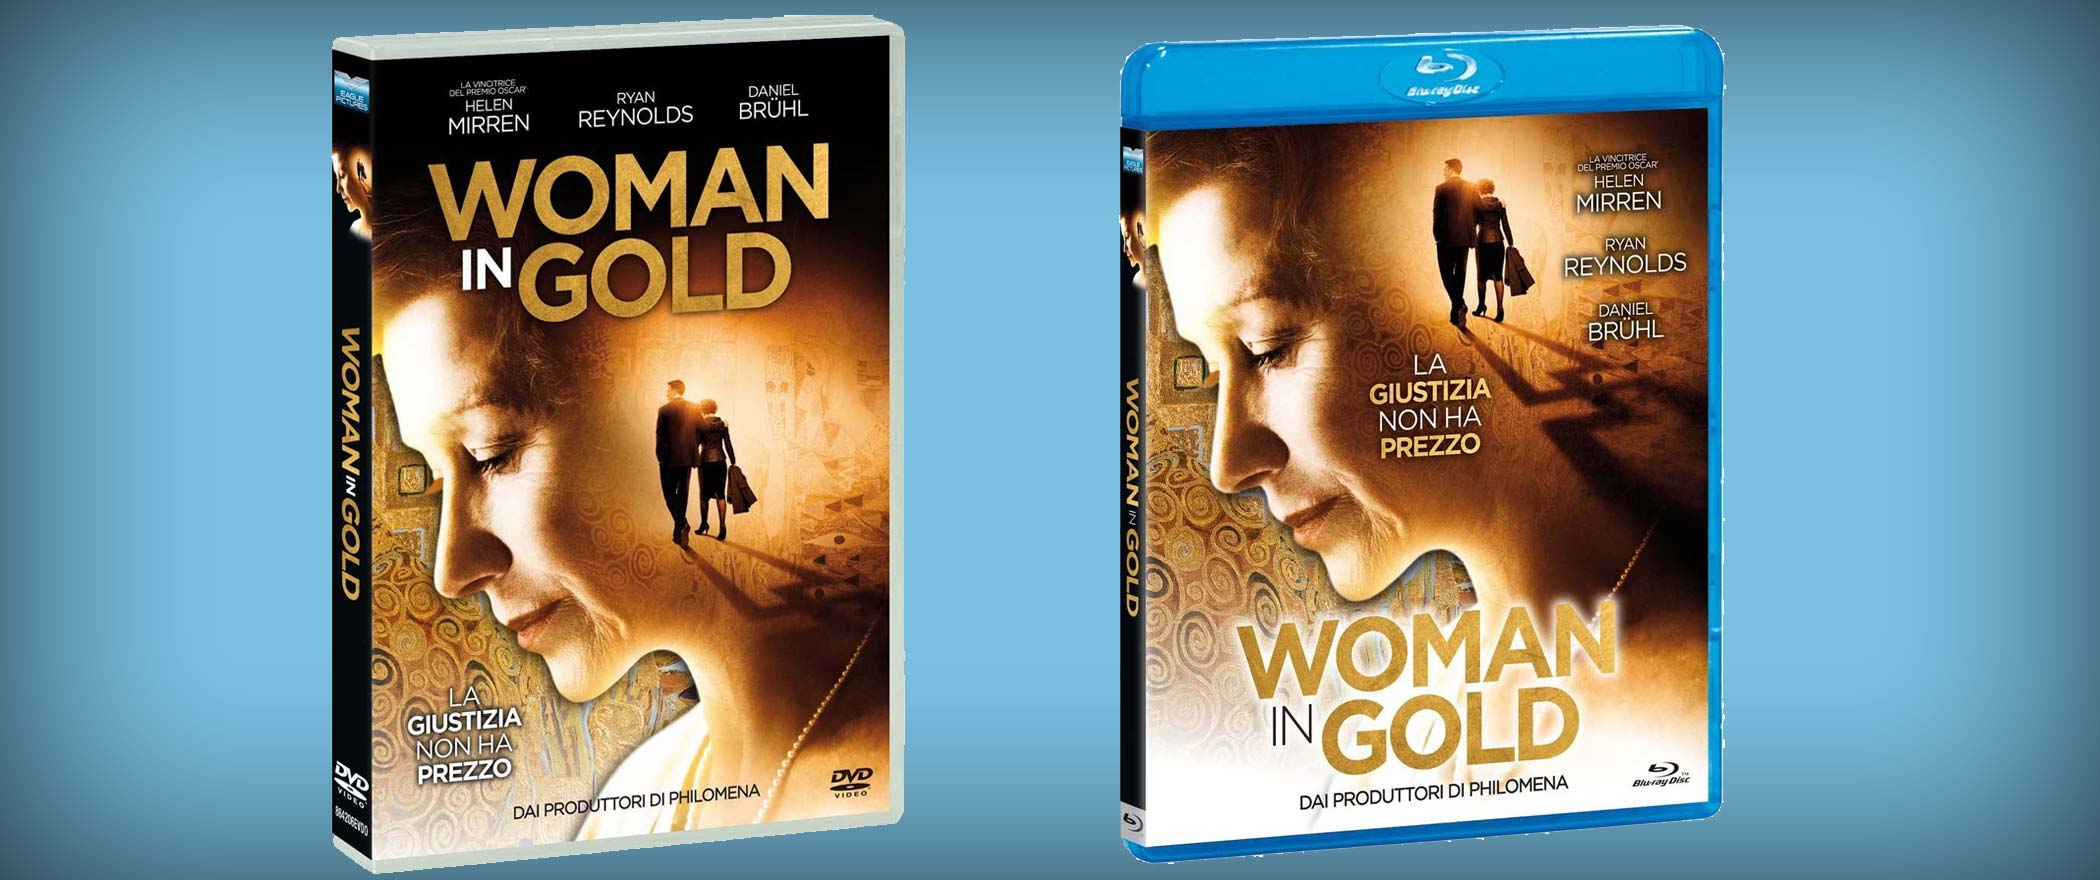 Woman in Gold in DVD e Blu-ray